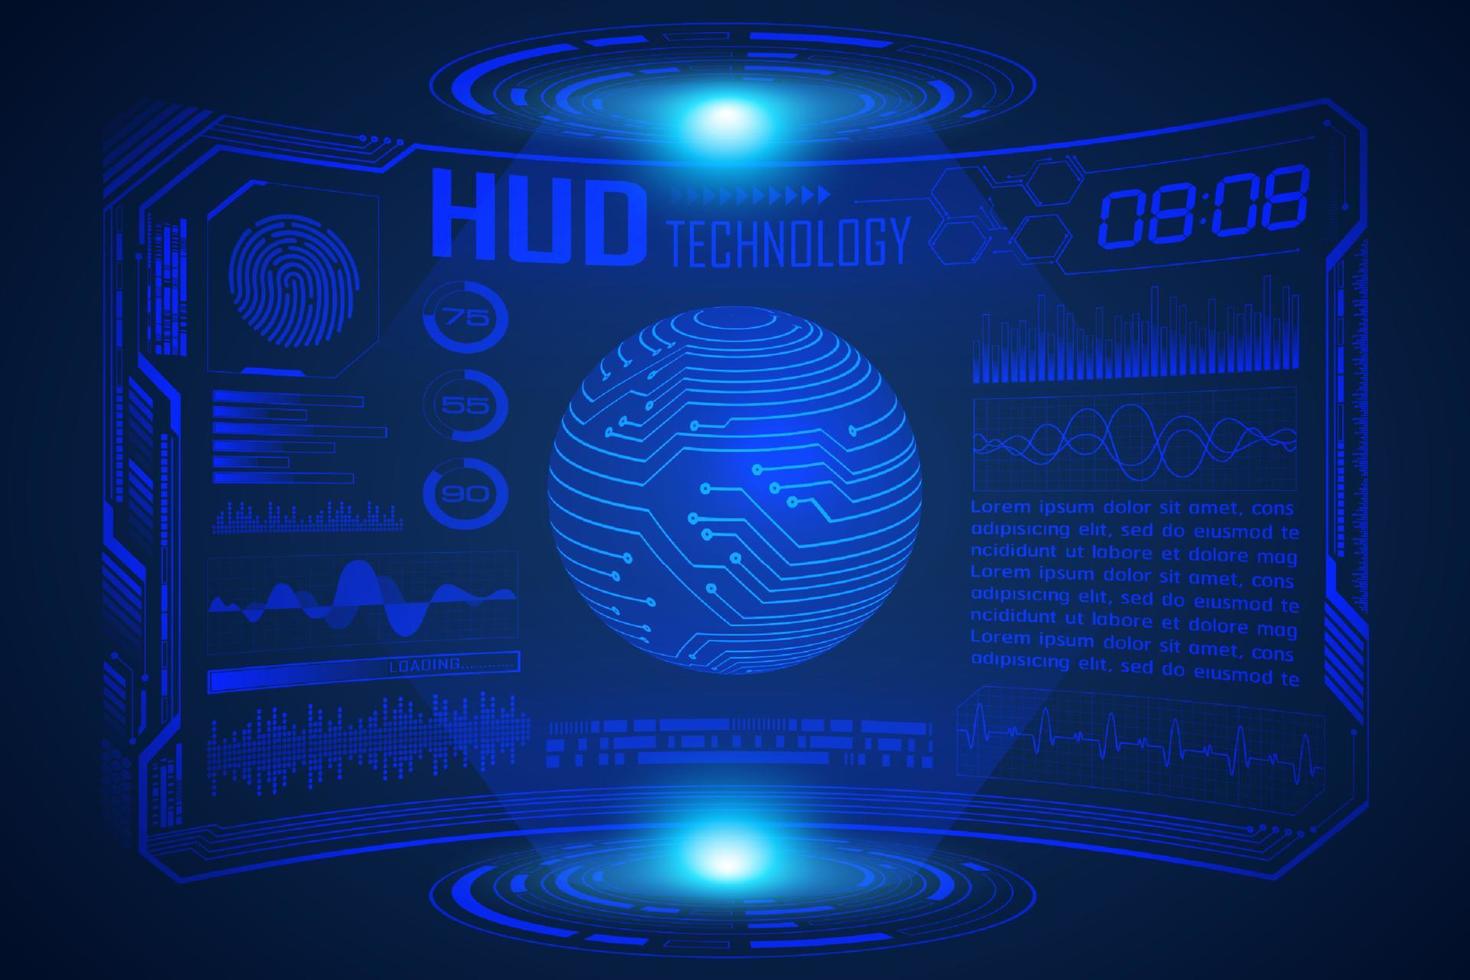 fundo de tela de tecnologia hud moderno azul com mapa-múndi vetor